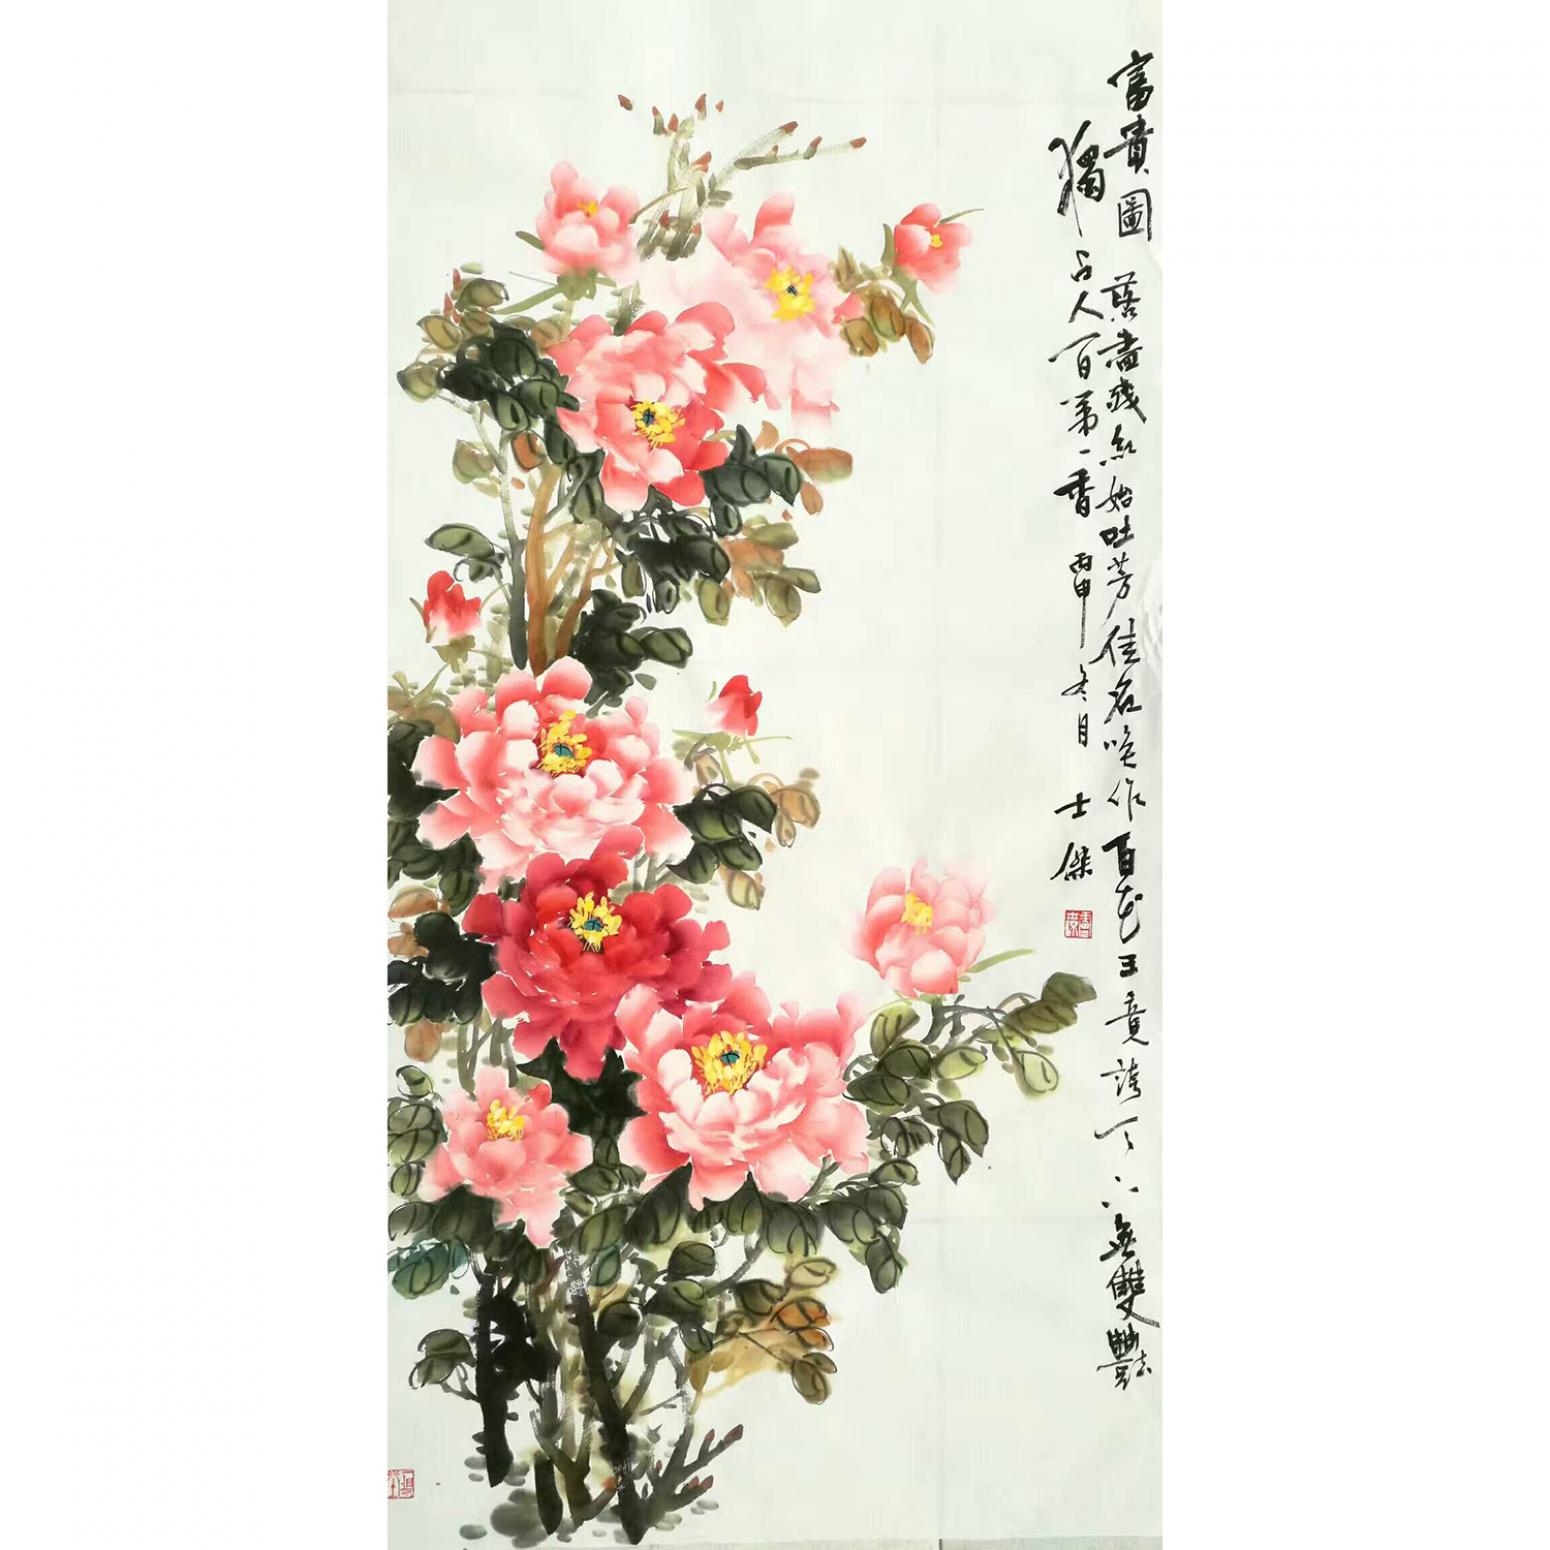 卢士杰国画作品《【花开富贵3】卢士杰》